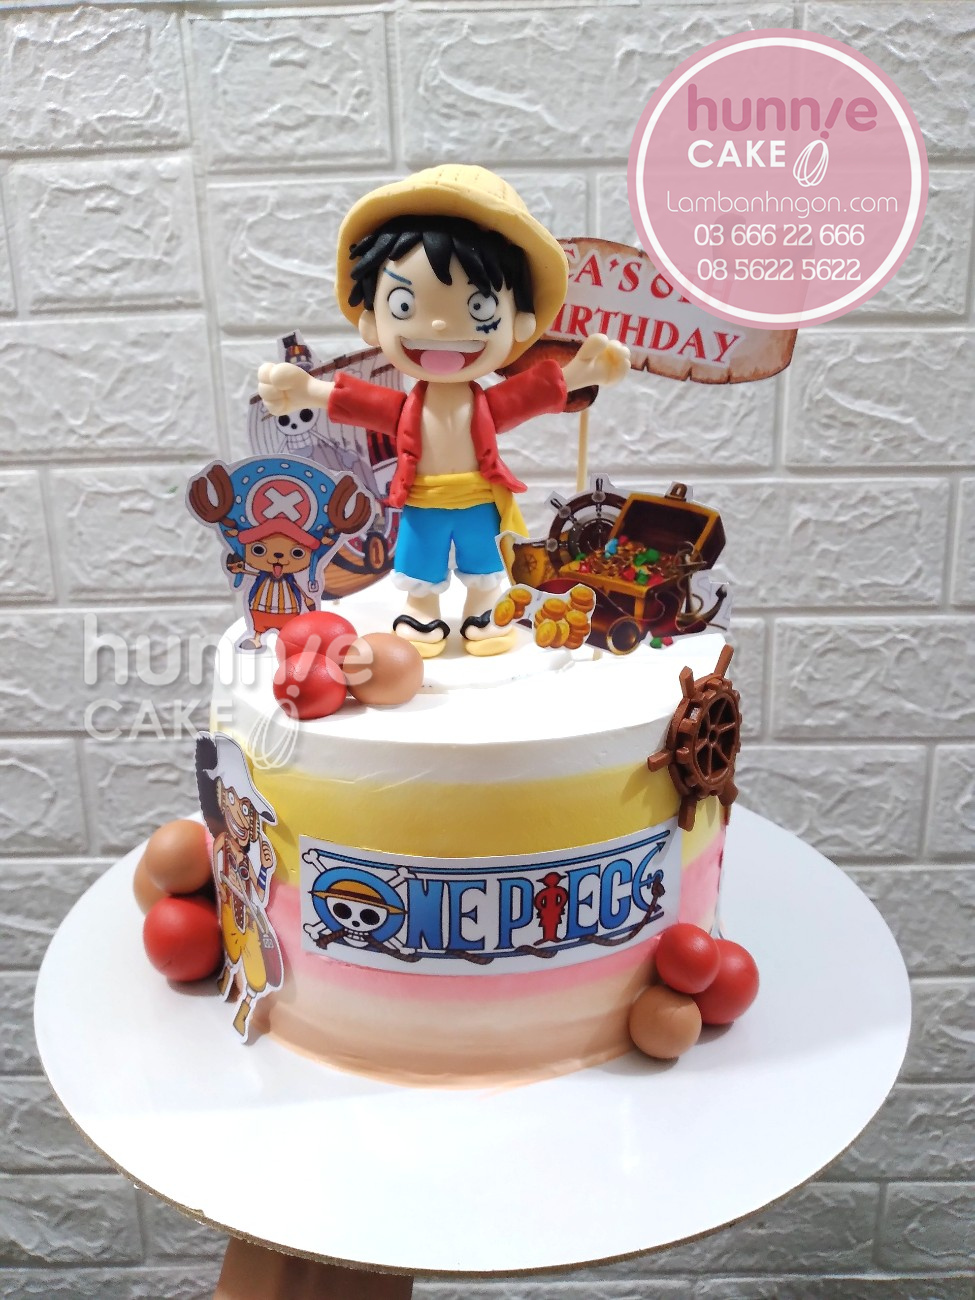 Bánh sinh nhật One Piece với Luffy đẹp ngầu tặng bé thích truyện - Nếu bạn đang tìm kiếm một món quà sinh nhật ý nghĩa cho bé yêu của mình, thì chiếc bánh sinh nhật One Piece với hình ảnh Luffy đích thị là lựa chọn tuyệt vời. Hãy xem hình ảnh để cảm nhận được sự sáng tạo và độc đáo của chiếc bánh này.